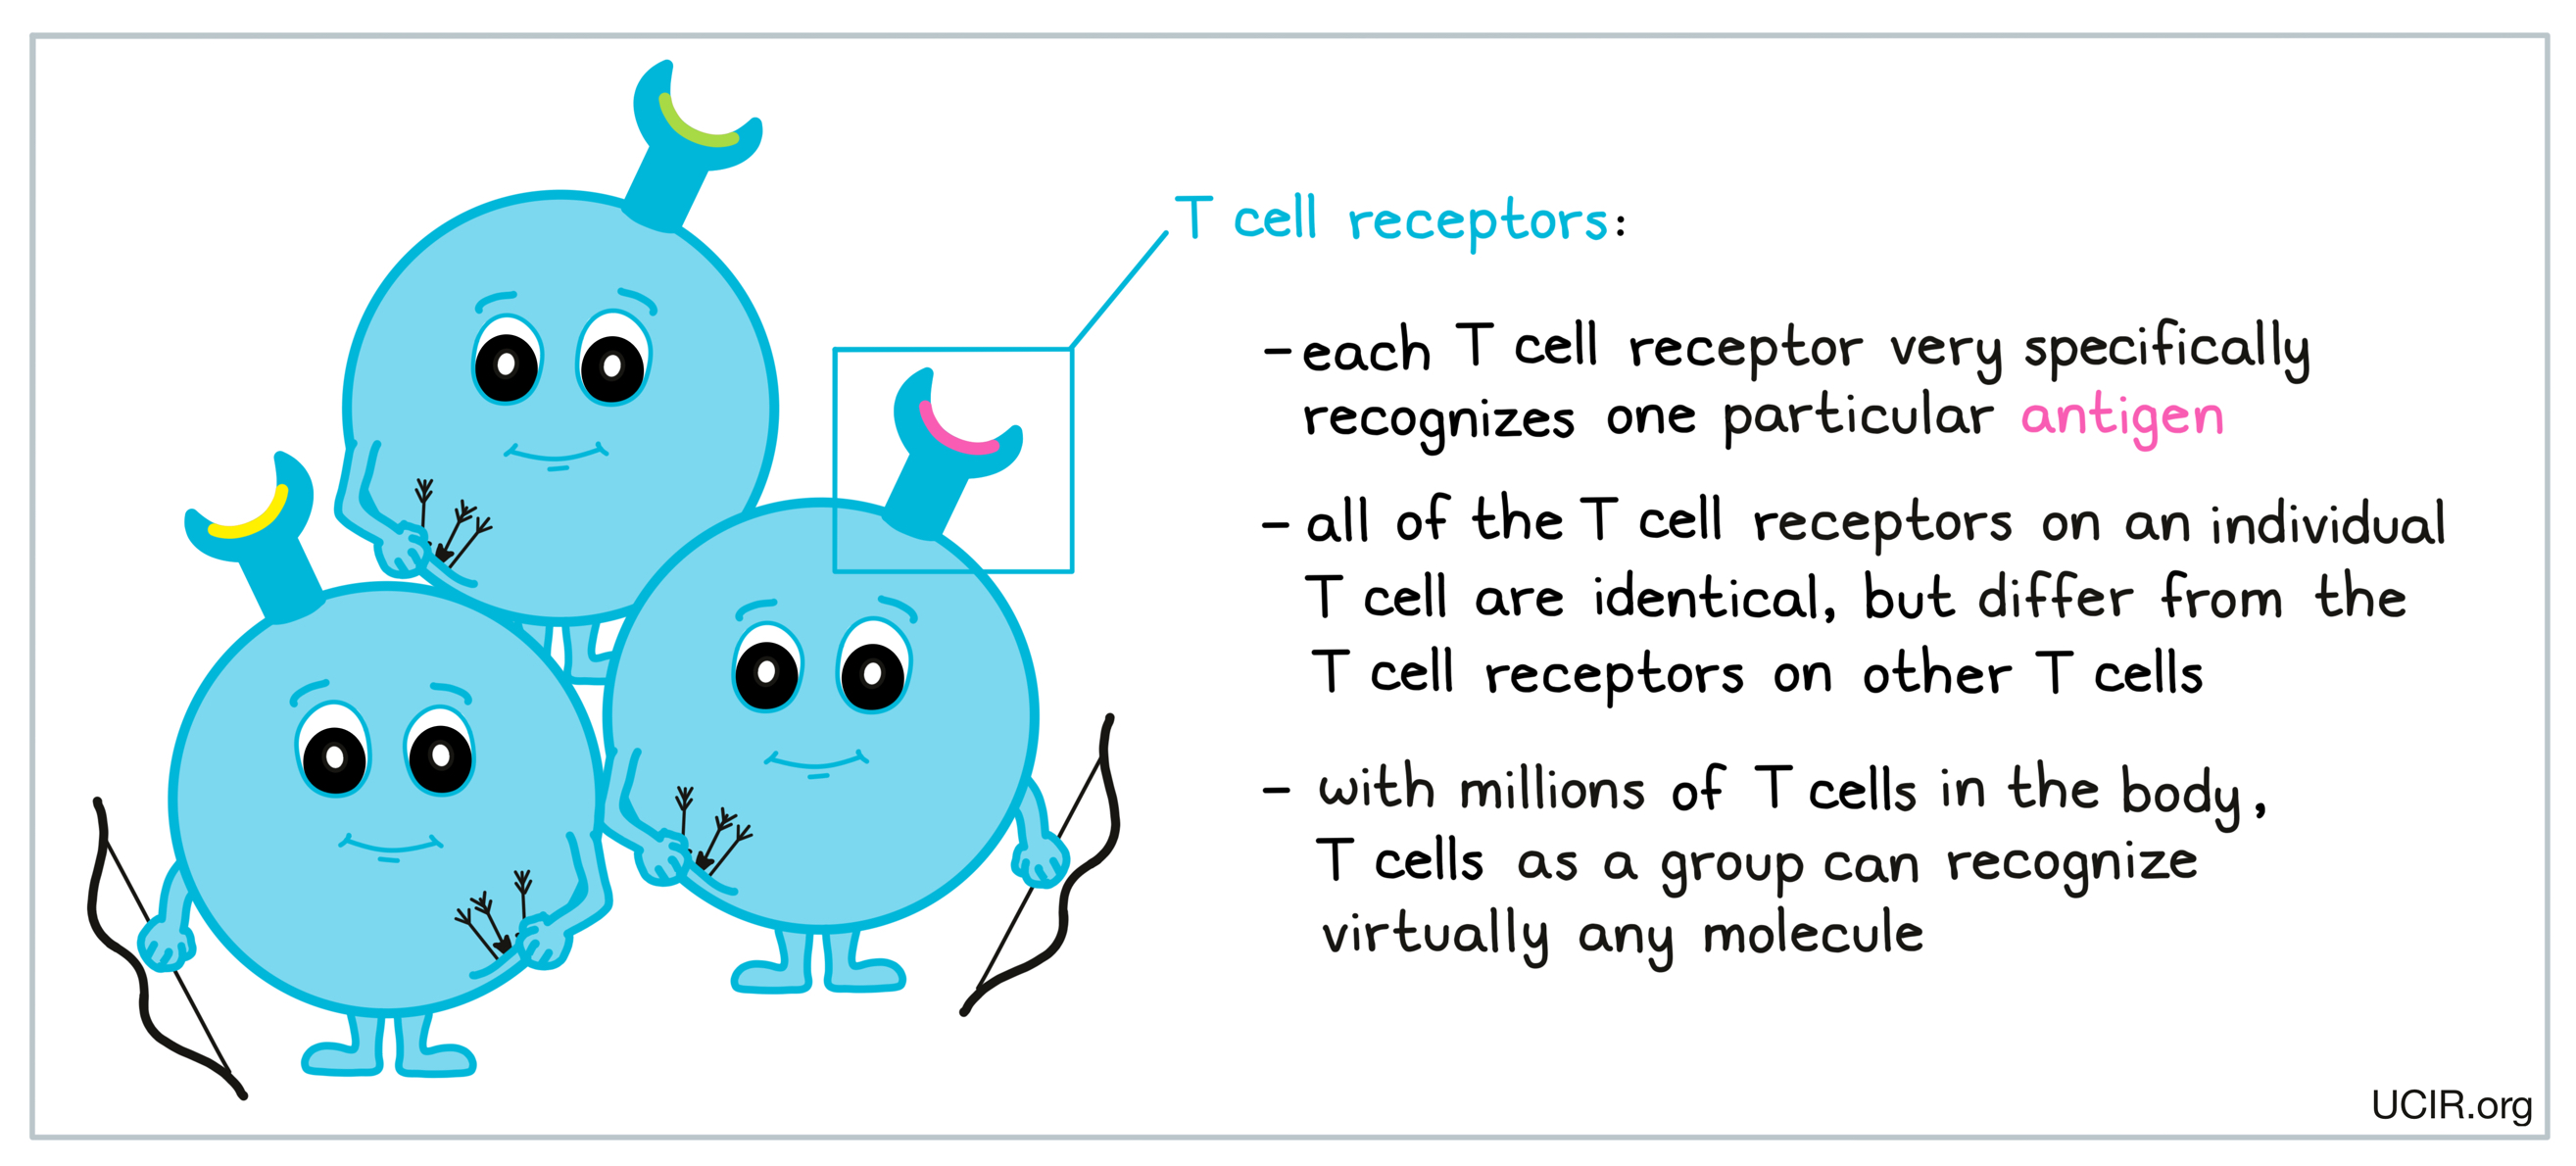 T cell receptors